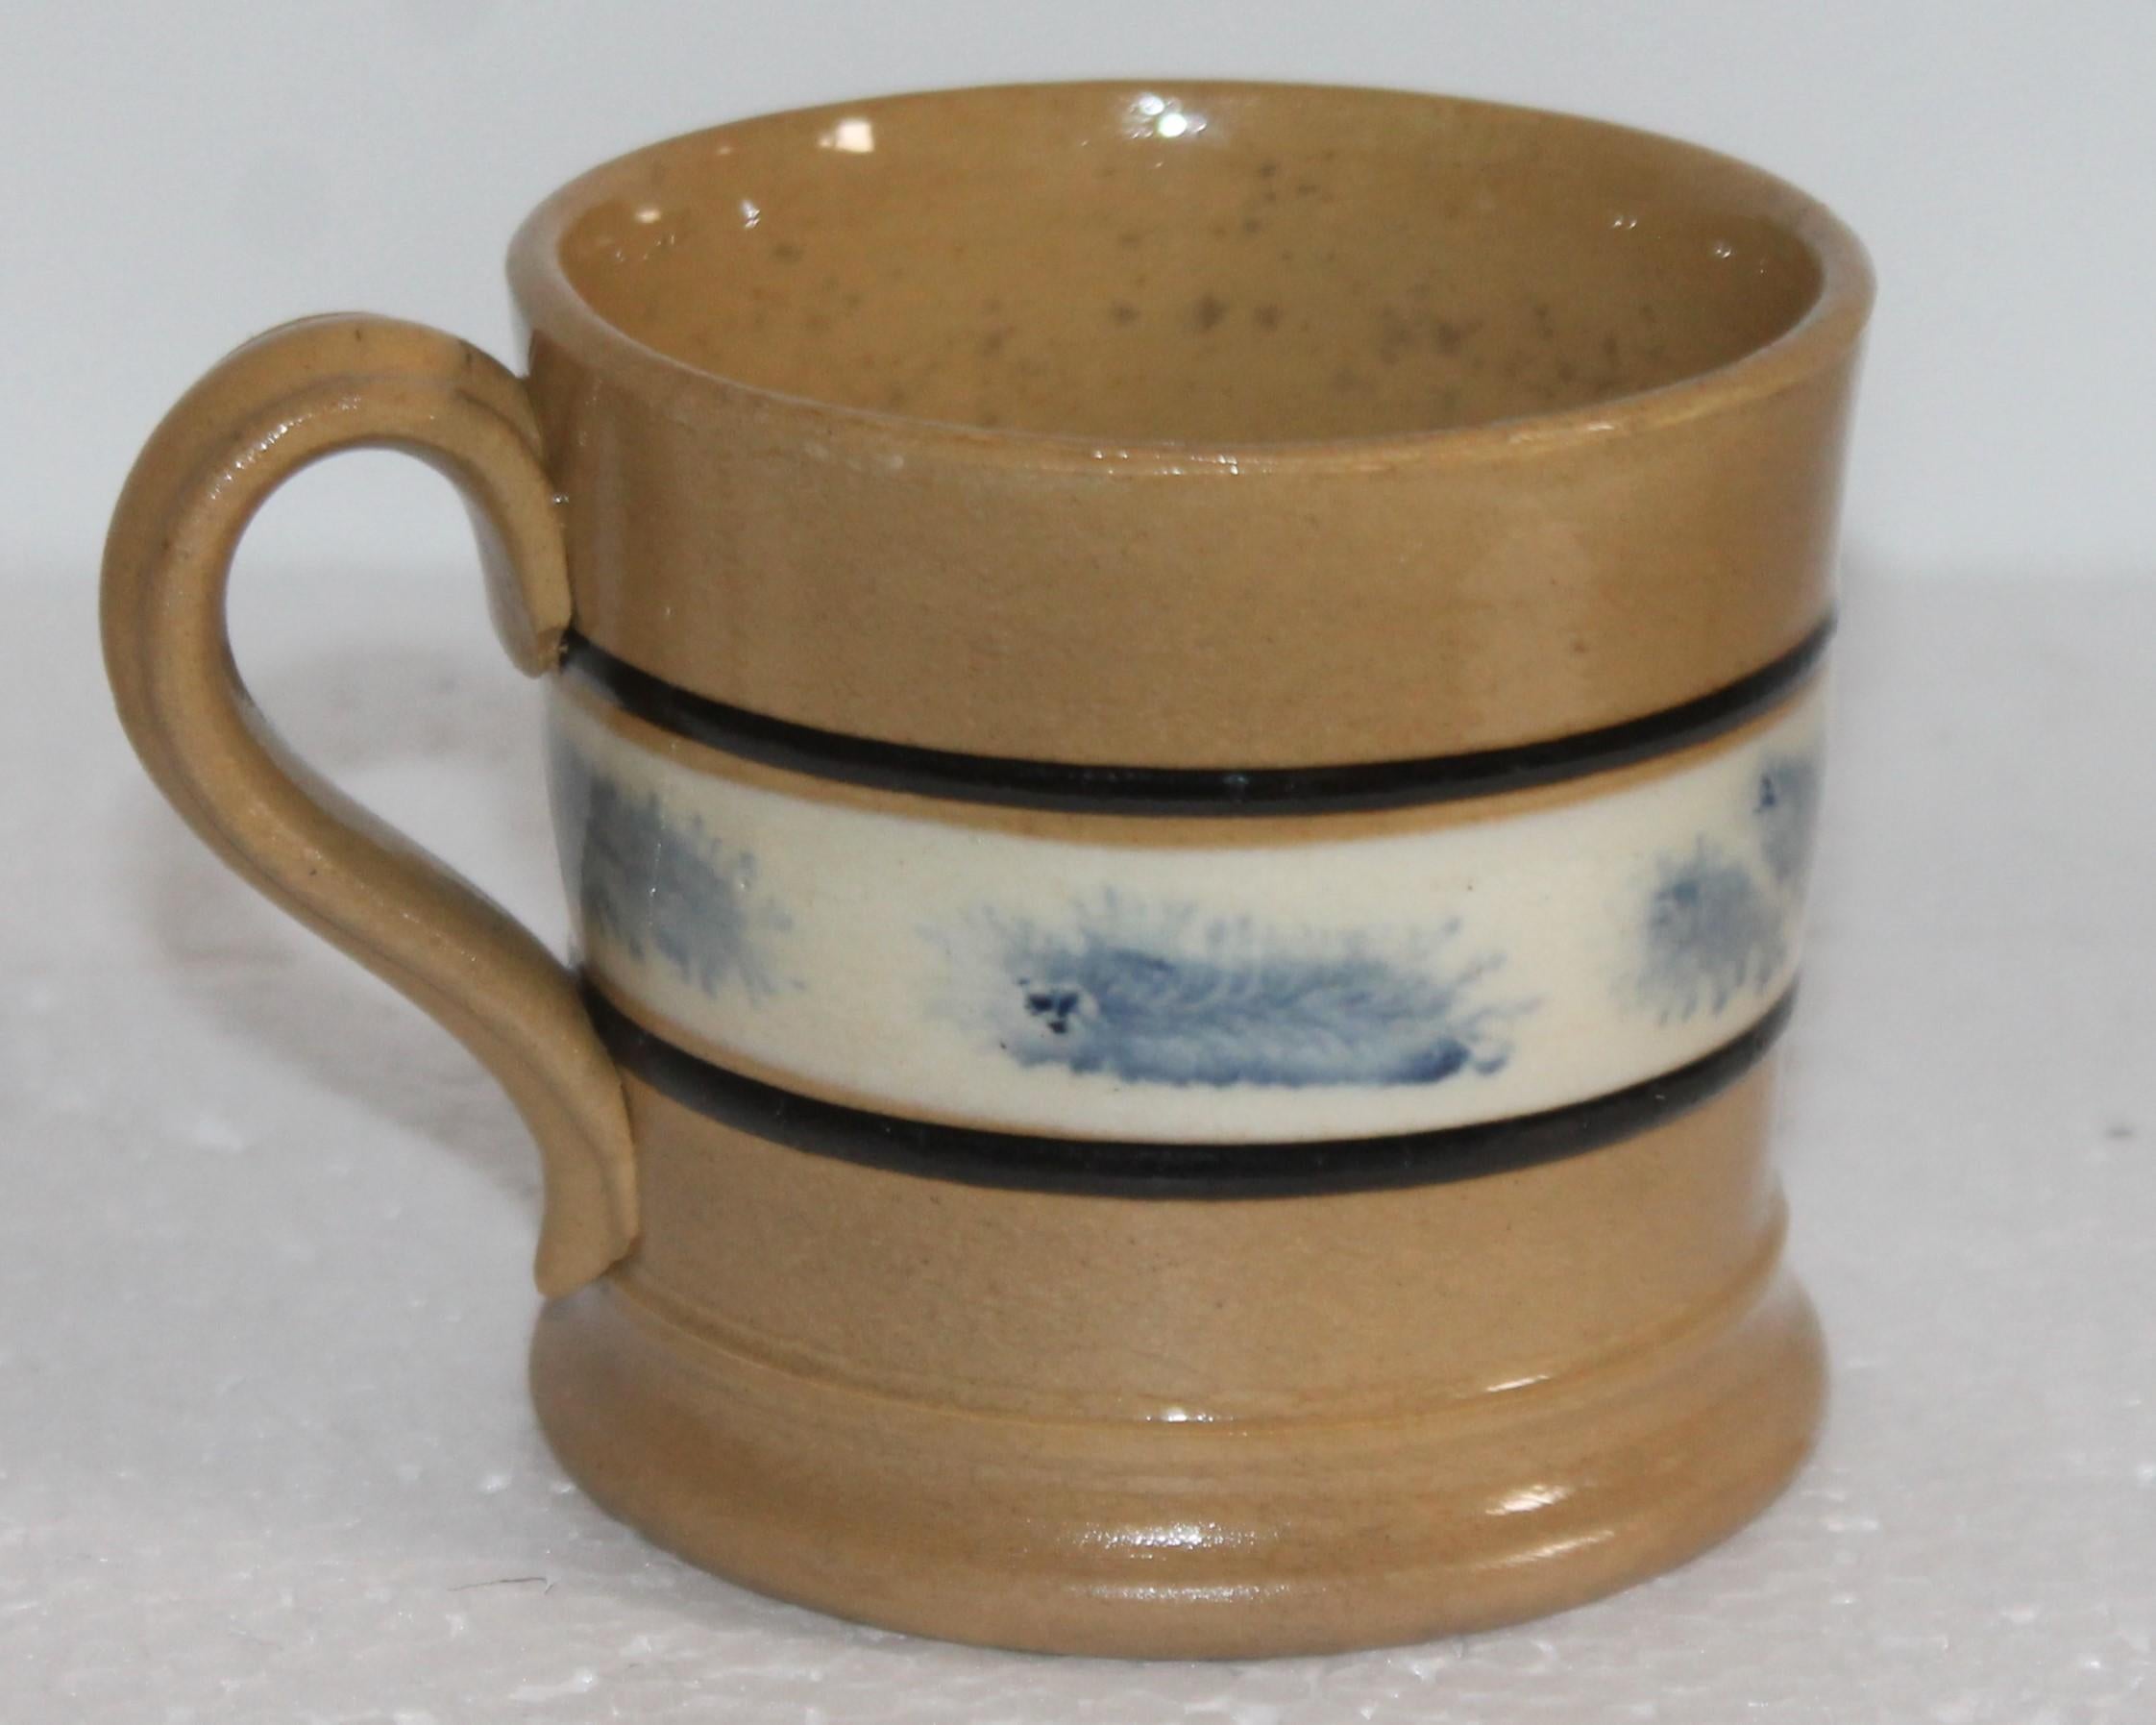 Cette tasse en porcelaine jaune moka du 19ème siècle avec un motif d'algues bleues est en bon état. Ce mug a une petite puce sur le bord qui semble être dans la glaçure. Ces mugs sont super rares et difficiles à trouver en bon état.